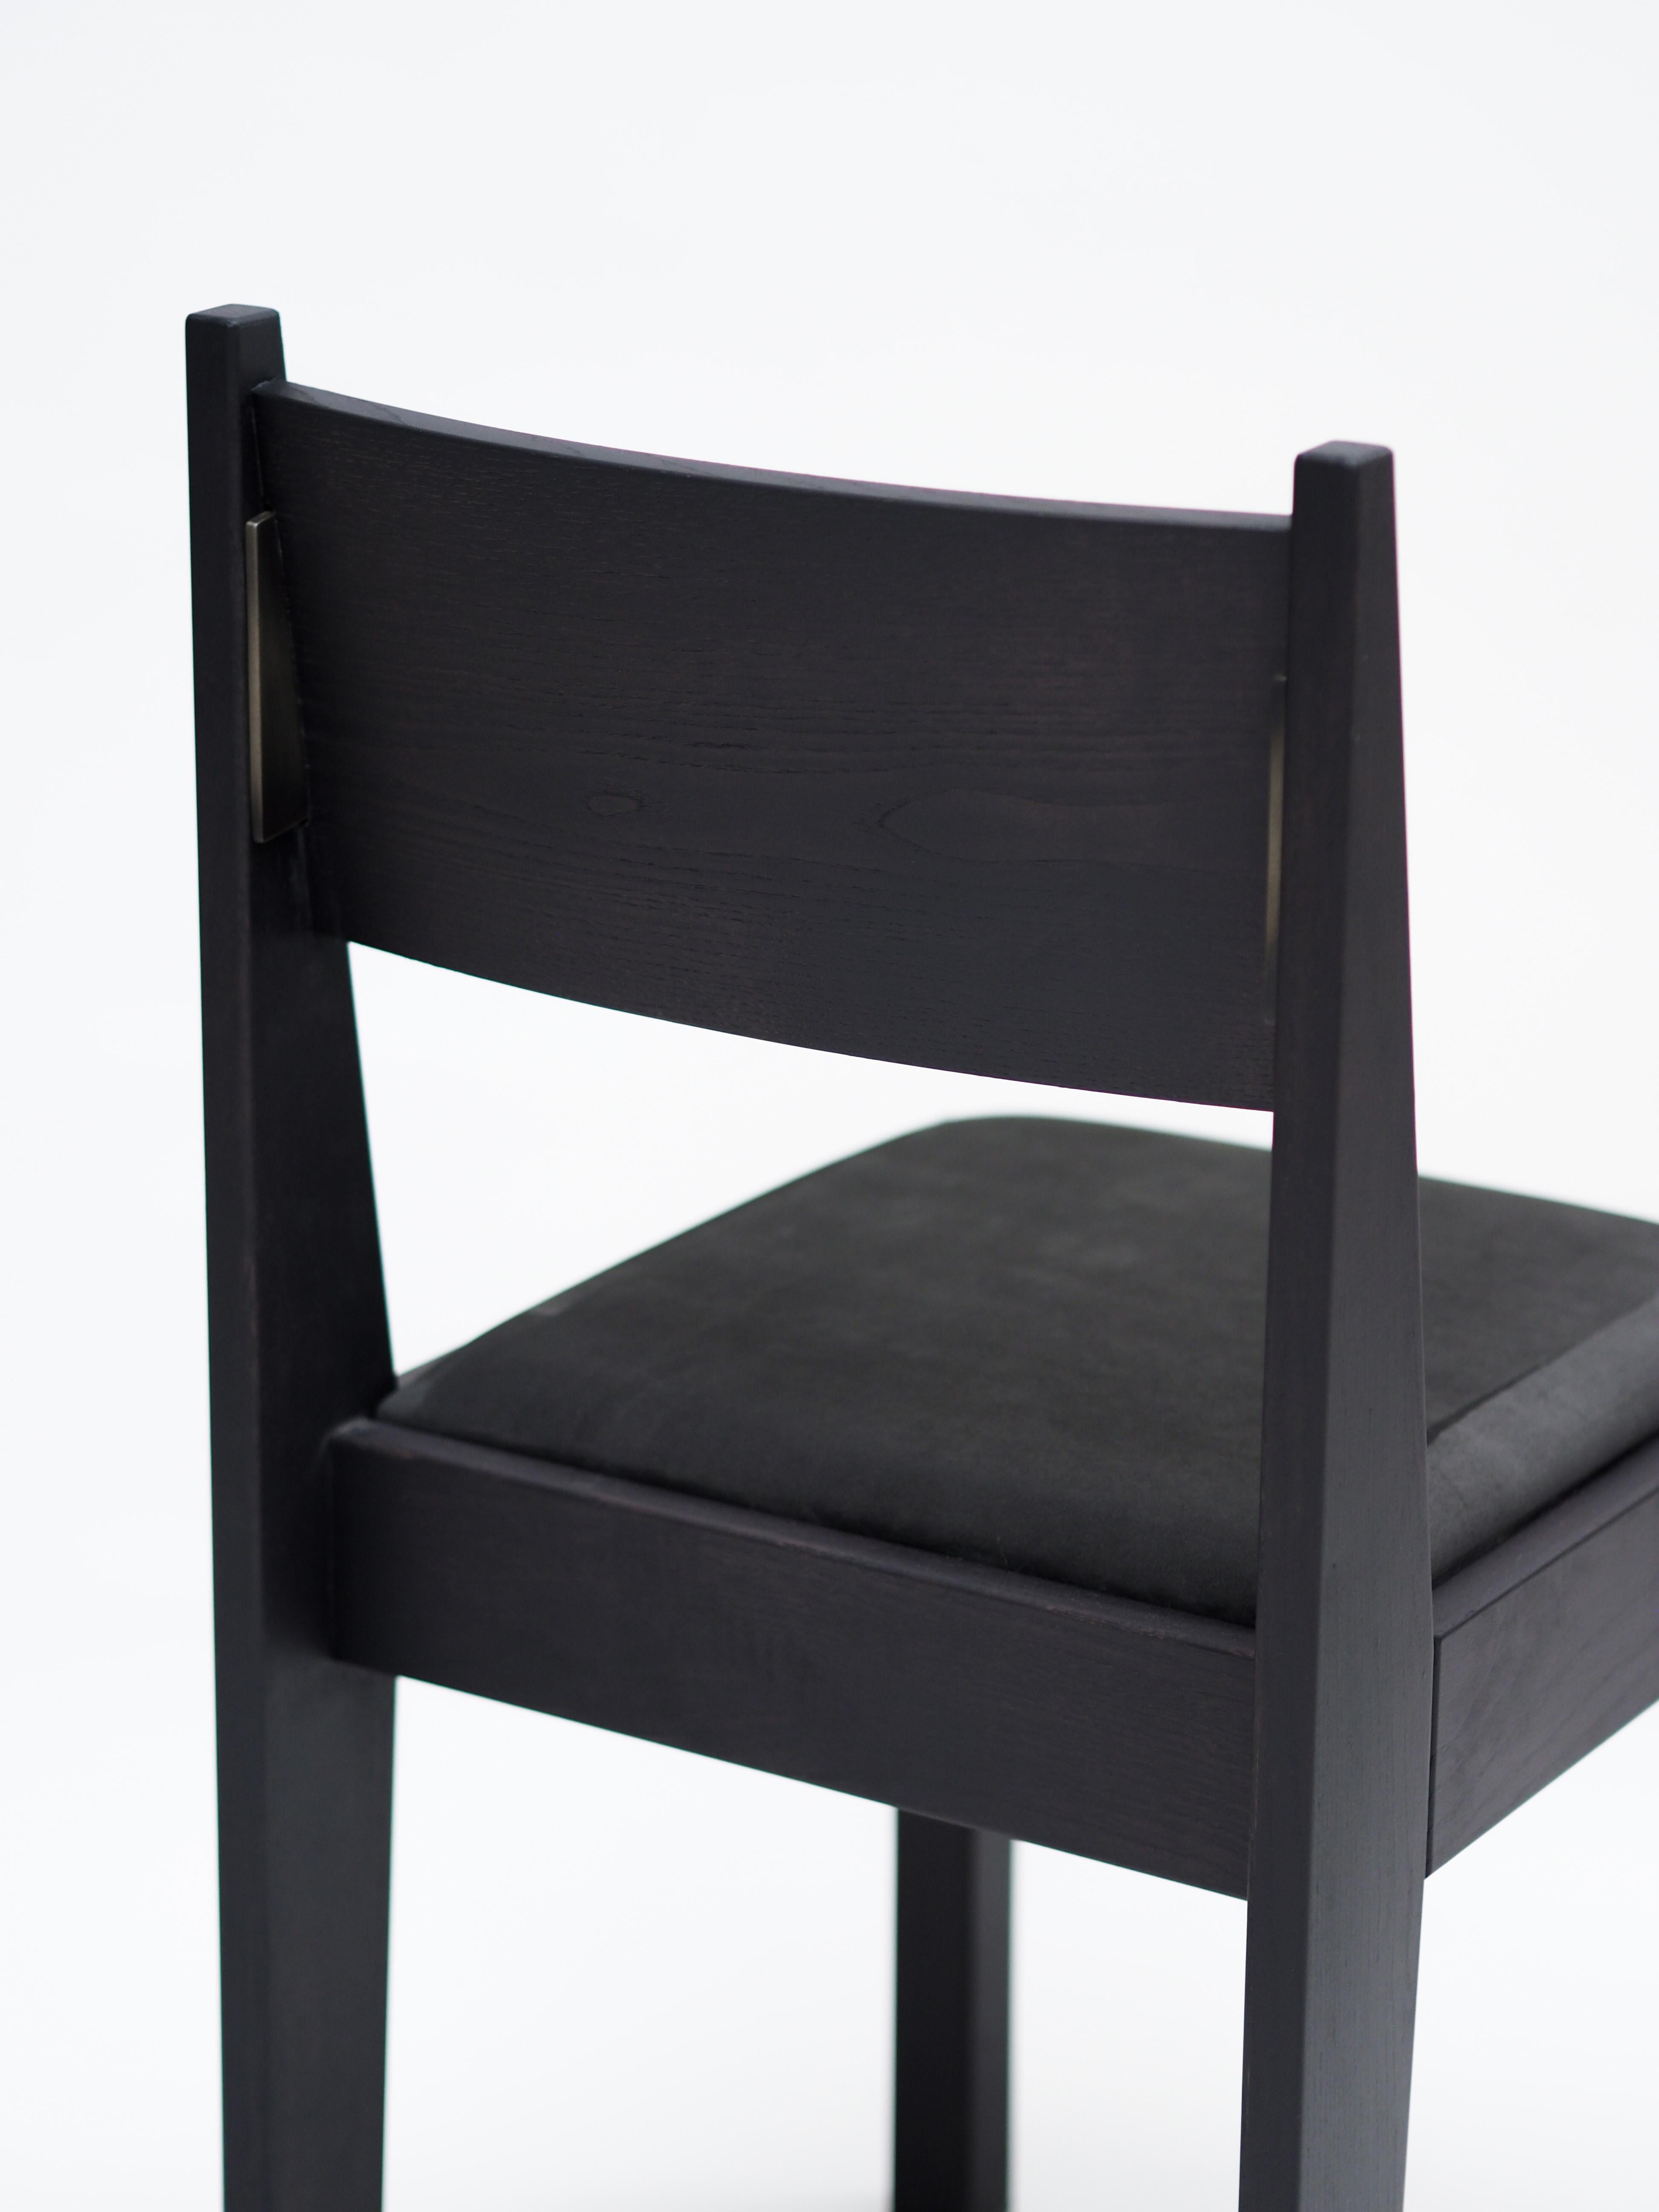 Unser barh Stuhl 01 ist ein klassisches, modernes Design mit feinsten Details. Der von der Art-Déco-Bewegung inspirierte Stuhl sieht vertraut aus, ist zeitlos und passt zu fast jeder Einrichtung. Um das Gesamtbild von barh zu vervollständigen,